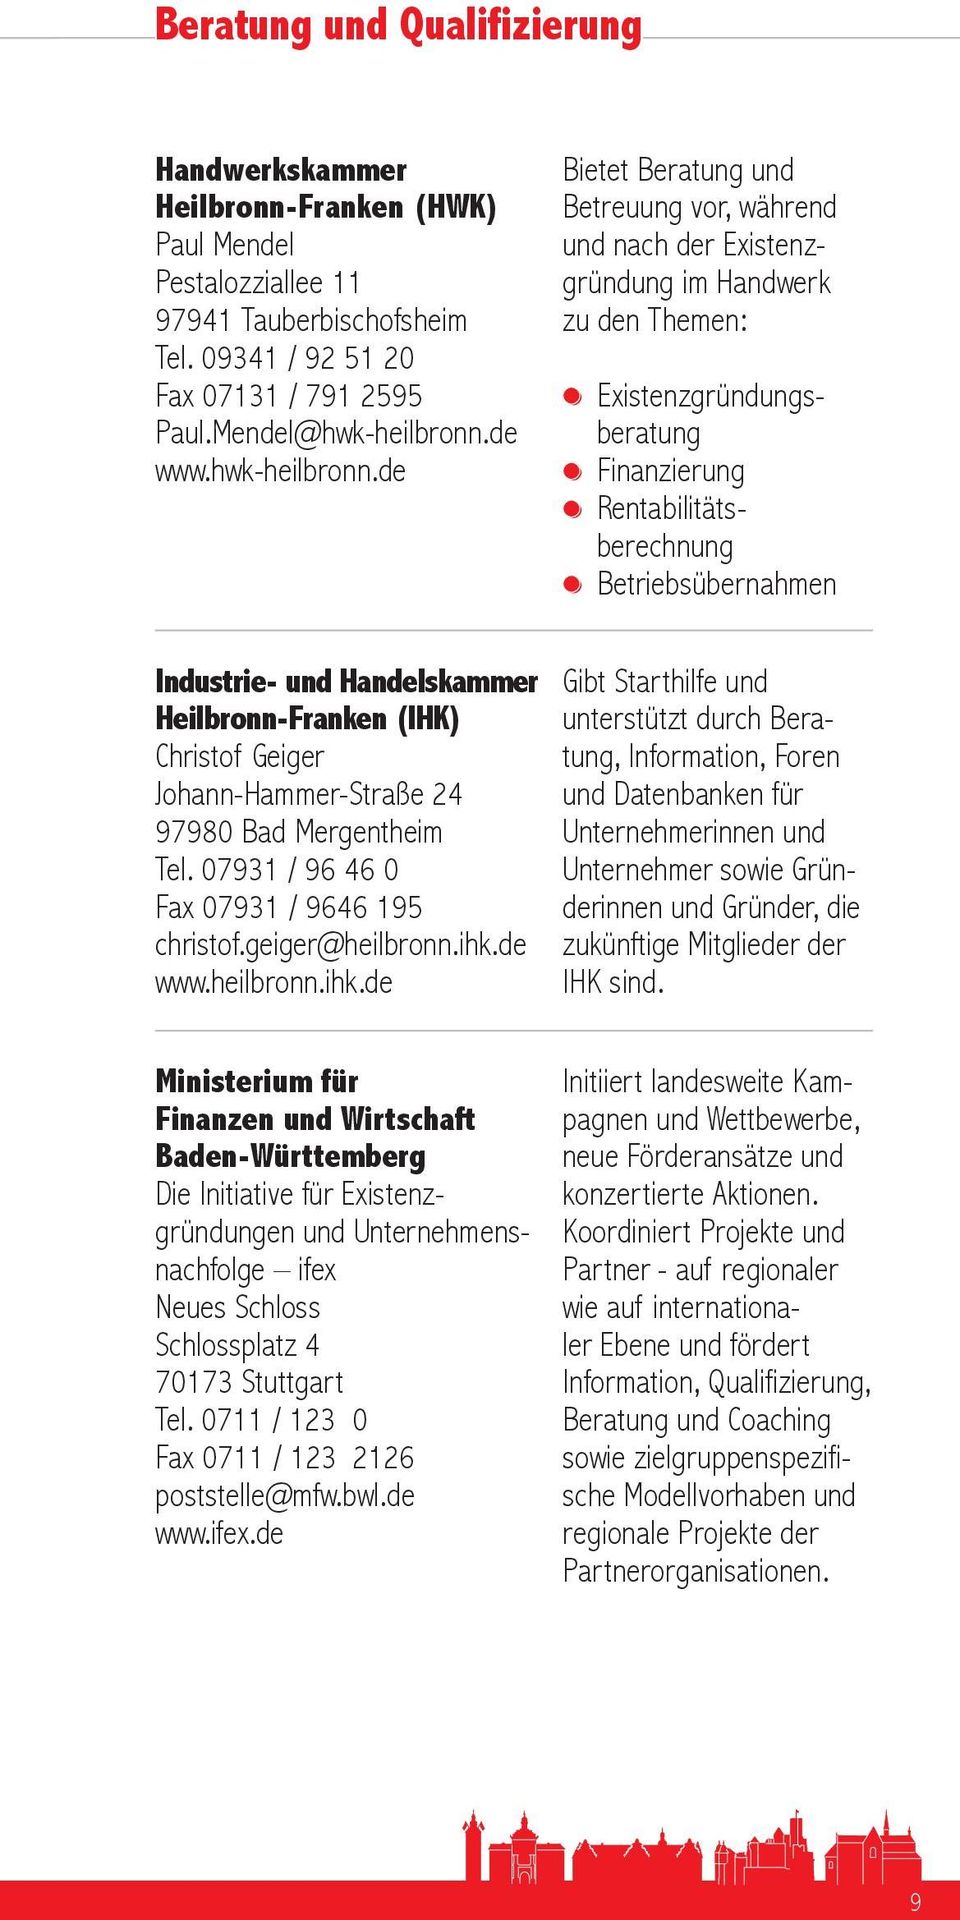 ihk.de www.heilbronn.ihk.de Ministerium für Finanzen und Wirtschaft Baden-Württemberg Die Initiative für Existenzgründungen und Unternehmensnachfolge ifex Neues Schloss Schlossplatz 4 70173 Stuttgart Tel.